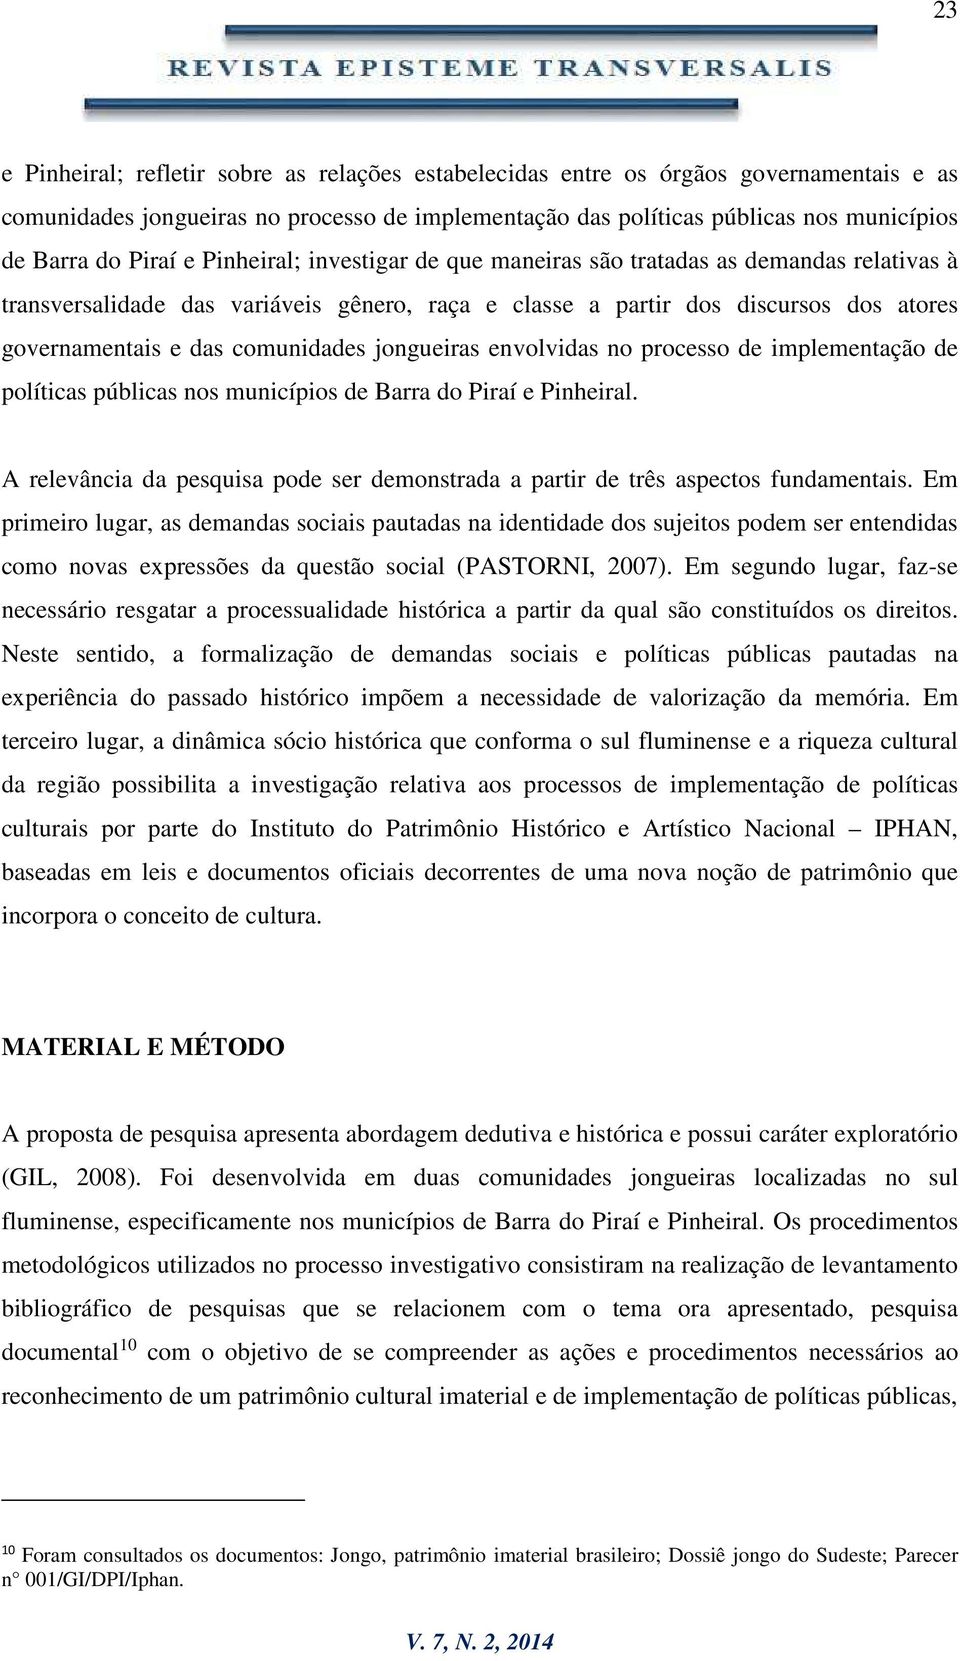 comunidades jongueiras envolvidas no processo de implementação de políticas públicas nos municípios de Barra do Piraí e Pinheiral.